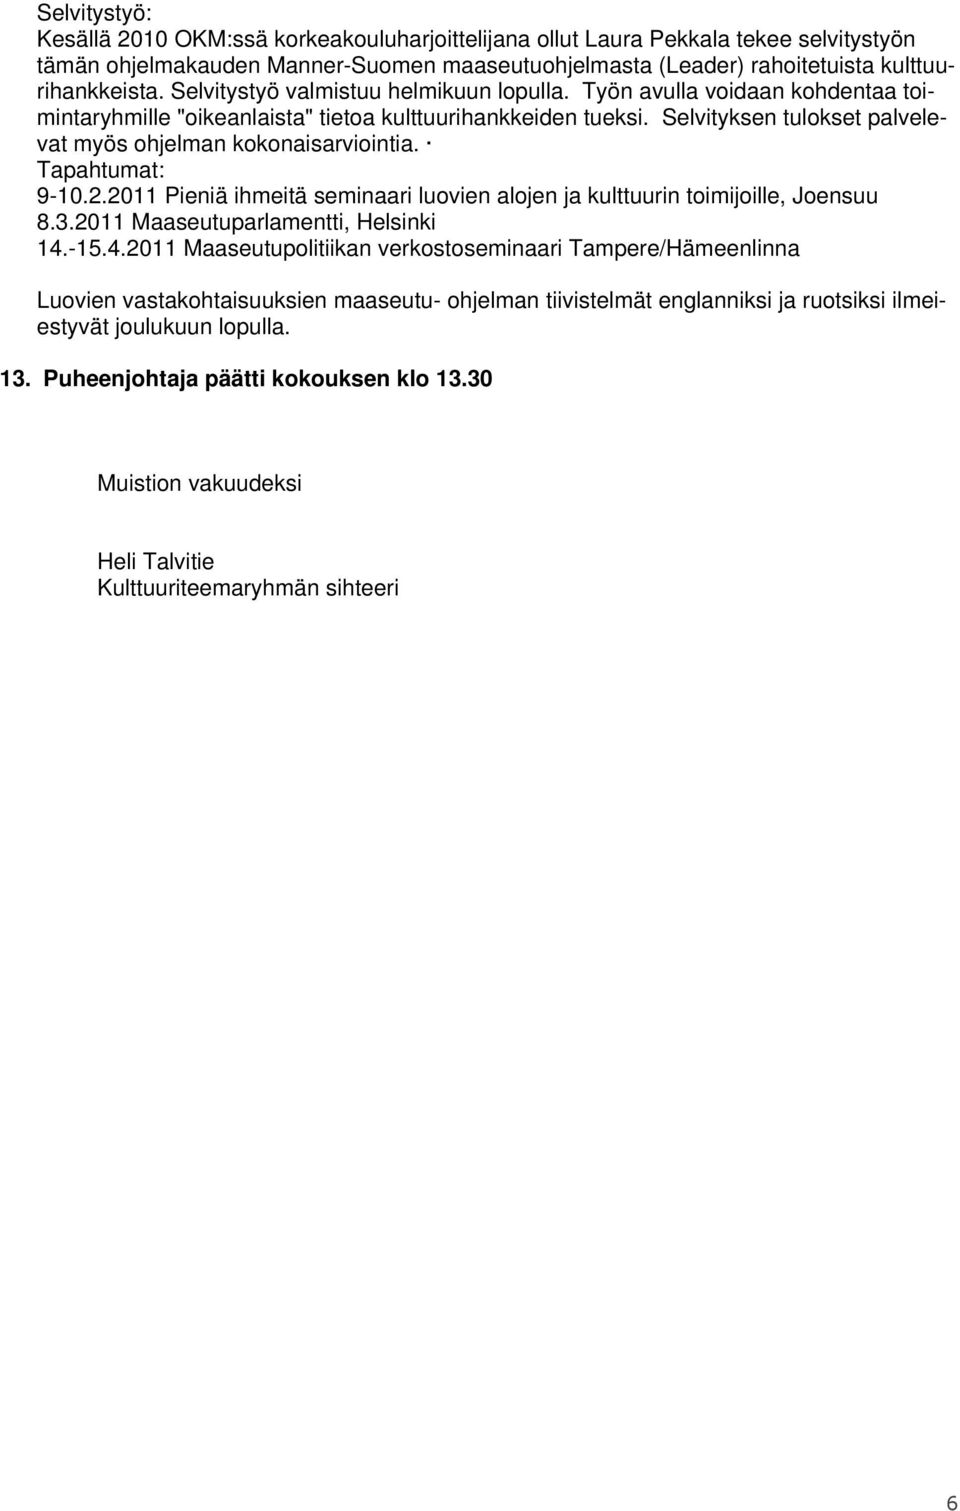 Selvityksen tulokset palvelevat myös ohjelman kokonaisarviointia. Tapahtumat: 9-10.2.2011 Pieniä ihmeitä seminaari luovien alojen ja kulttuurin toimijoille, Joensuu 8.3.